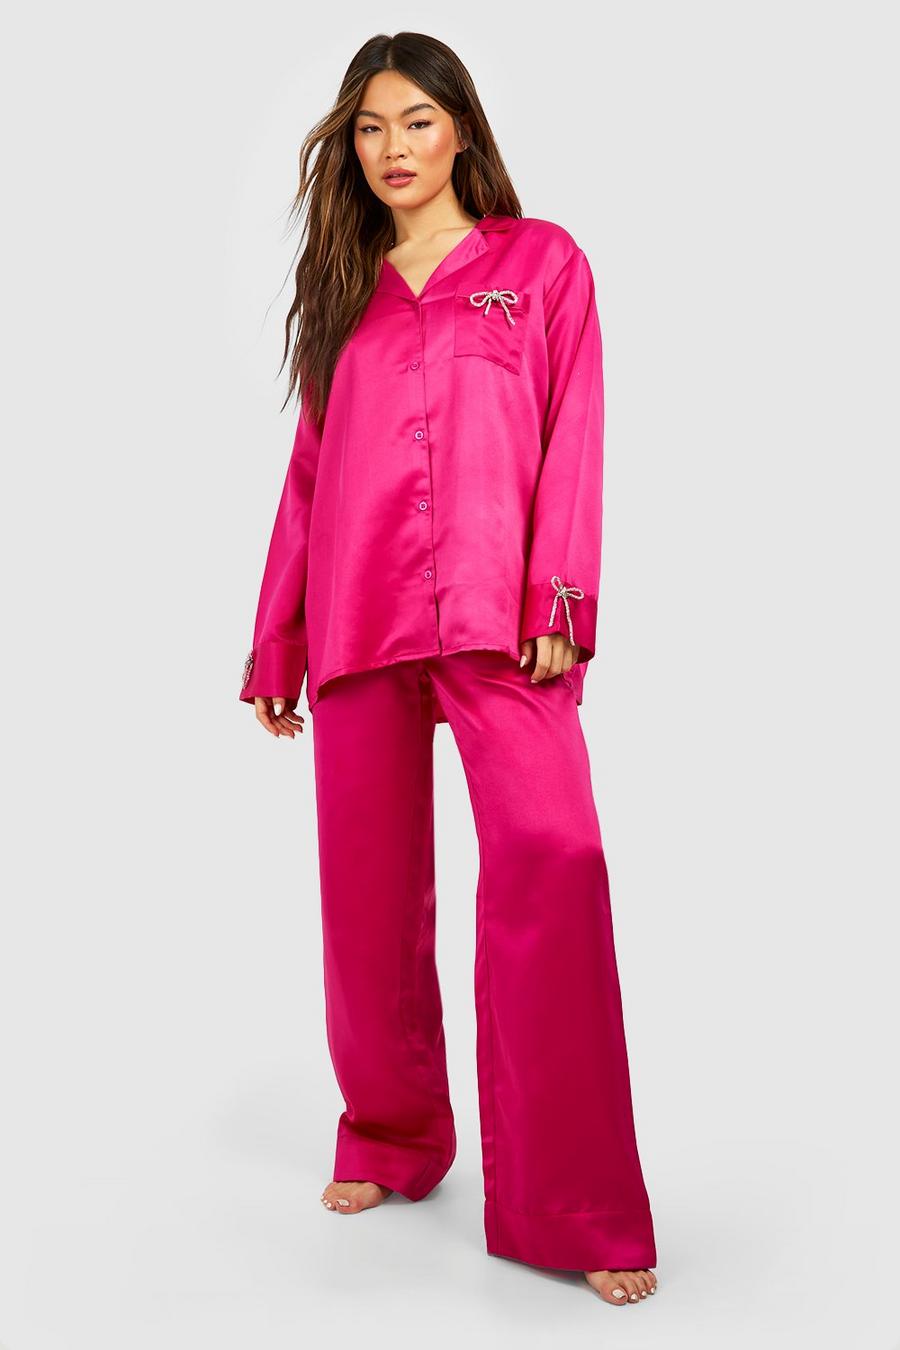 Pijama Premium de pernera ancha y camisa con lazo de incrustaciones, Hot pink image number 1